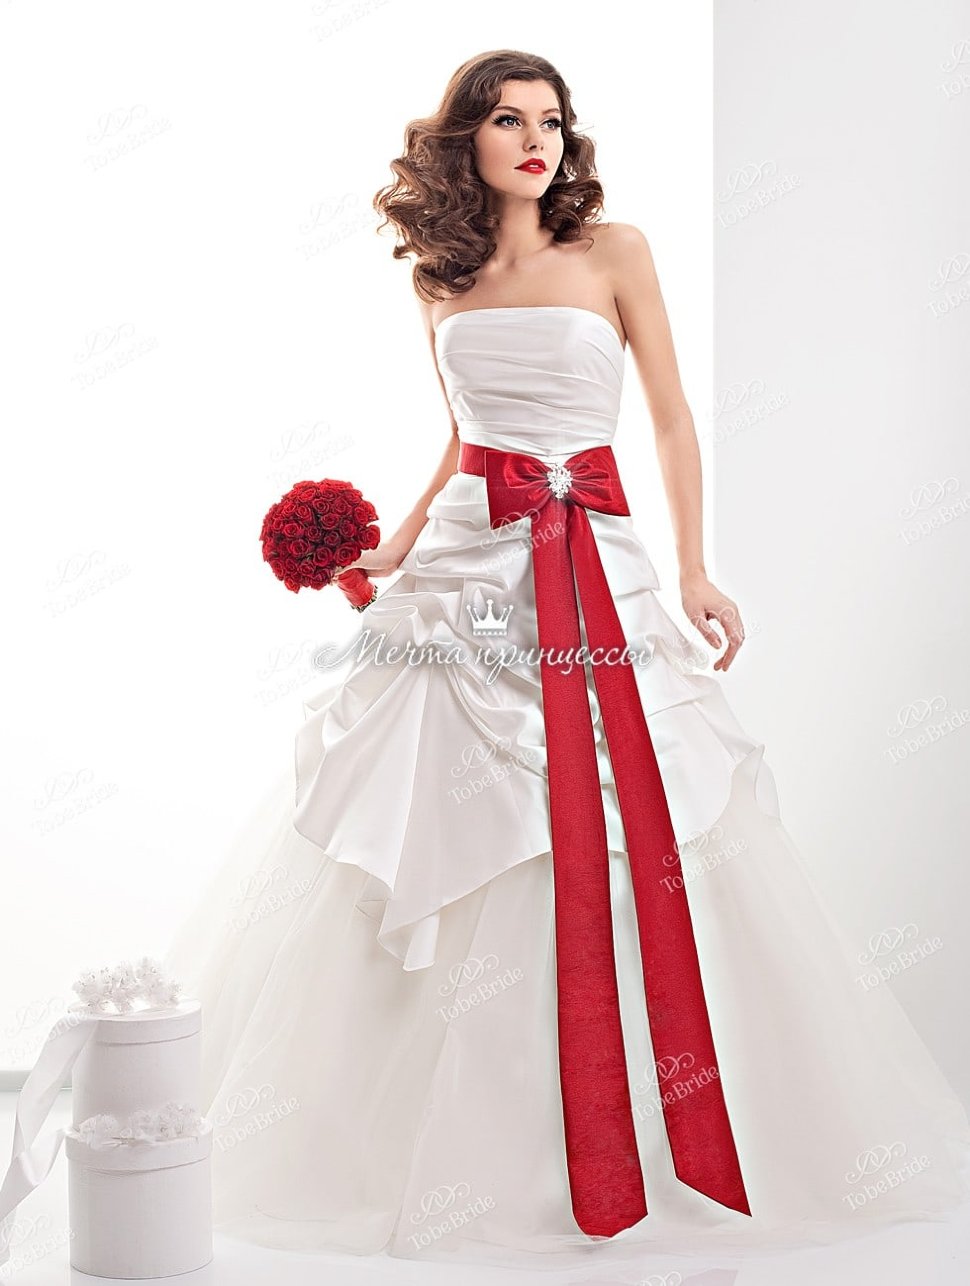 Свадьба без свадебного платья: в каких случаях невесты отказываются от традиционного белого платья в пользу иного костюма, идеи альтернативных нарядов (с фото)